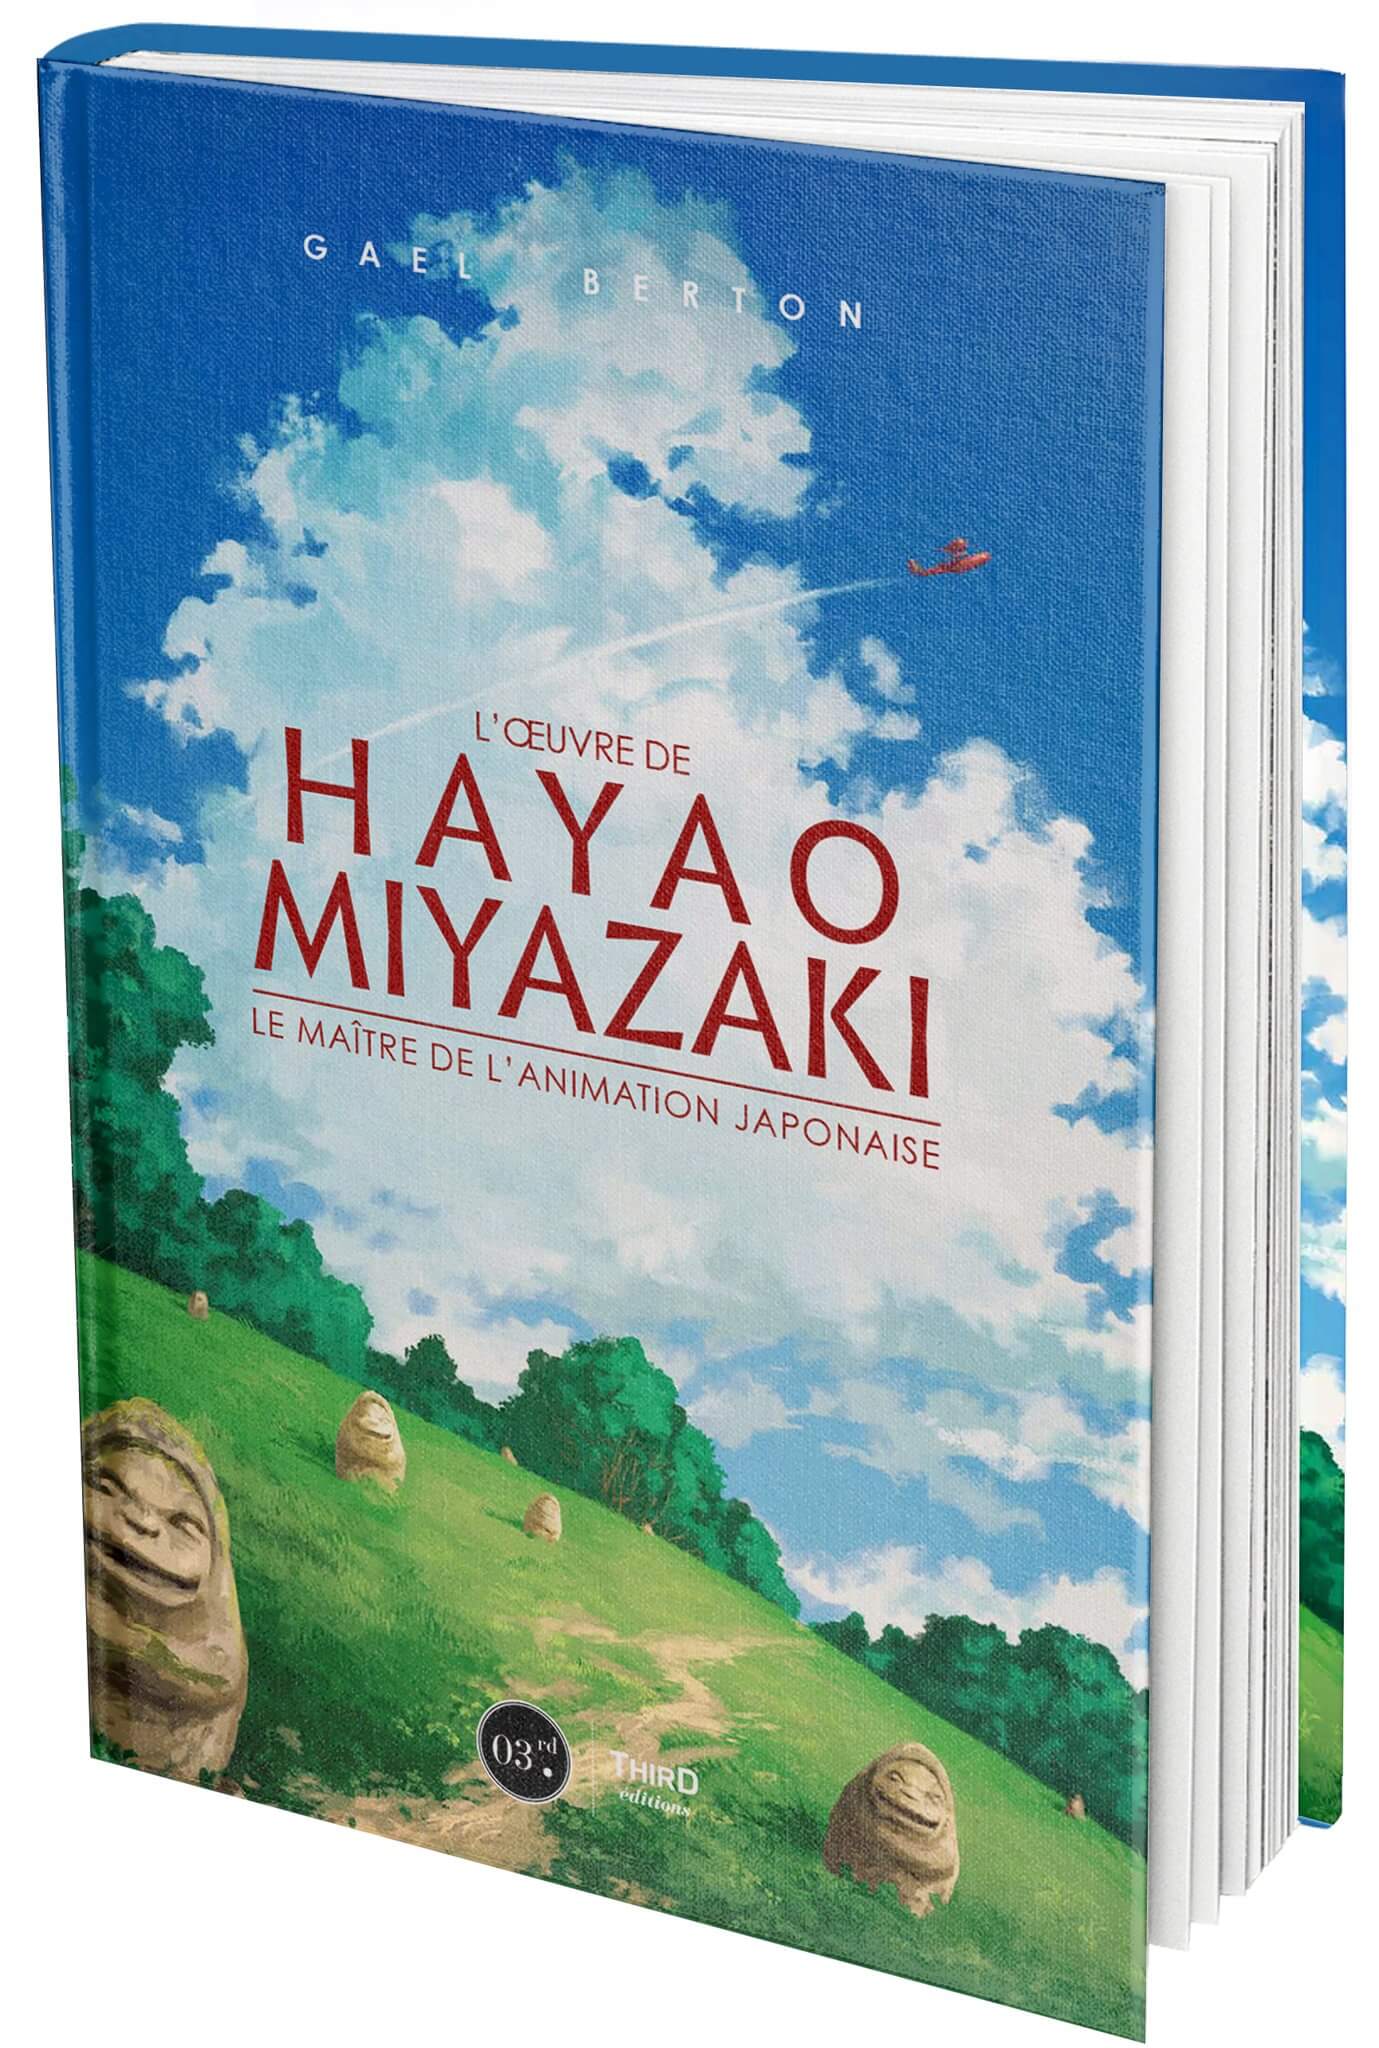 Le monde de Miyazaki - Editions IMHO